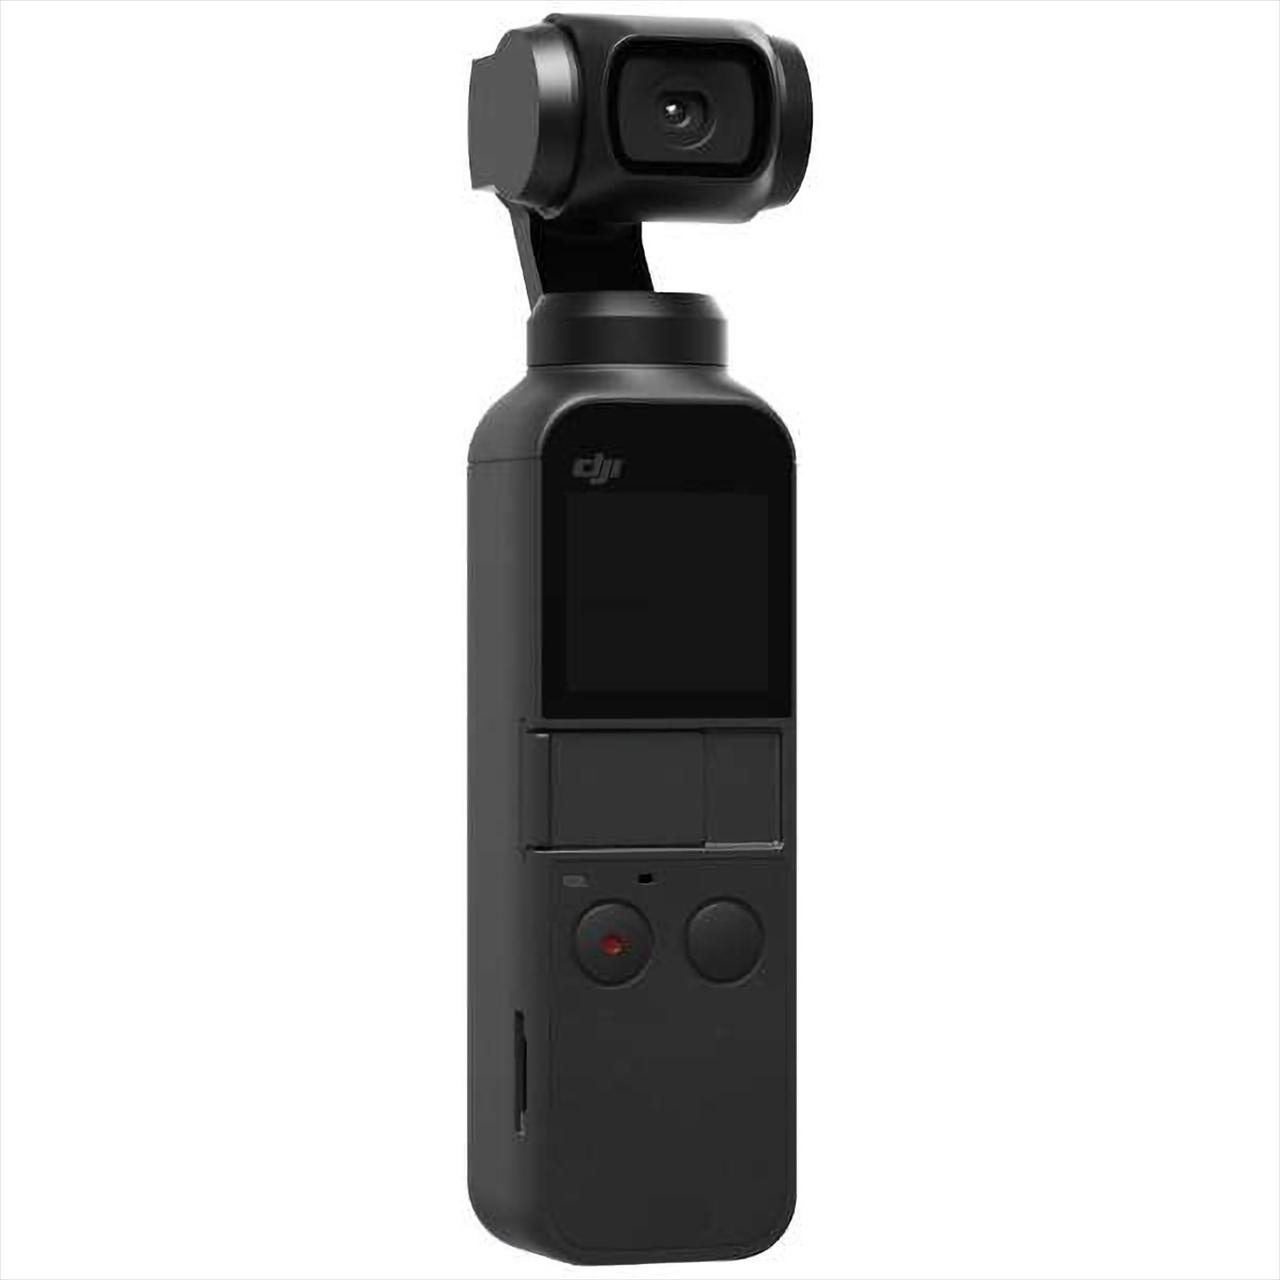 Osmo Pocket Ospkjp 3軸ジンバルスタビライザー搭載4kカメラ ビデオカメラ ビデオカメラ デジタルカメラ ビデオカメラ アクションカメラ Pcパーツと自作パソコン 組み立てパソコンの専門店 1 S Pcワンズ